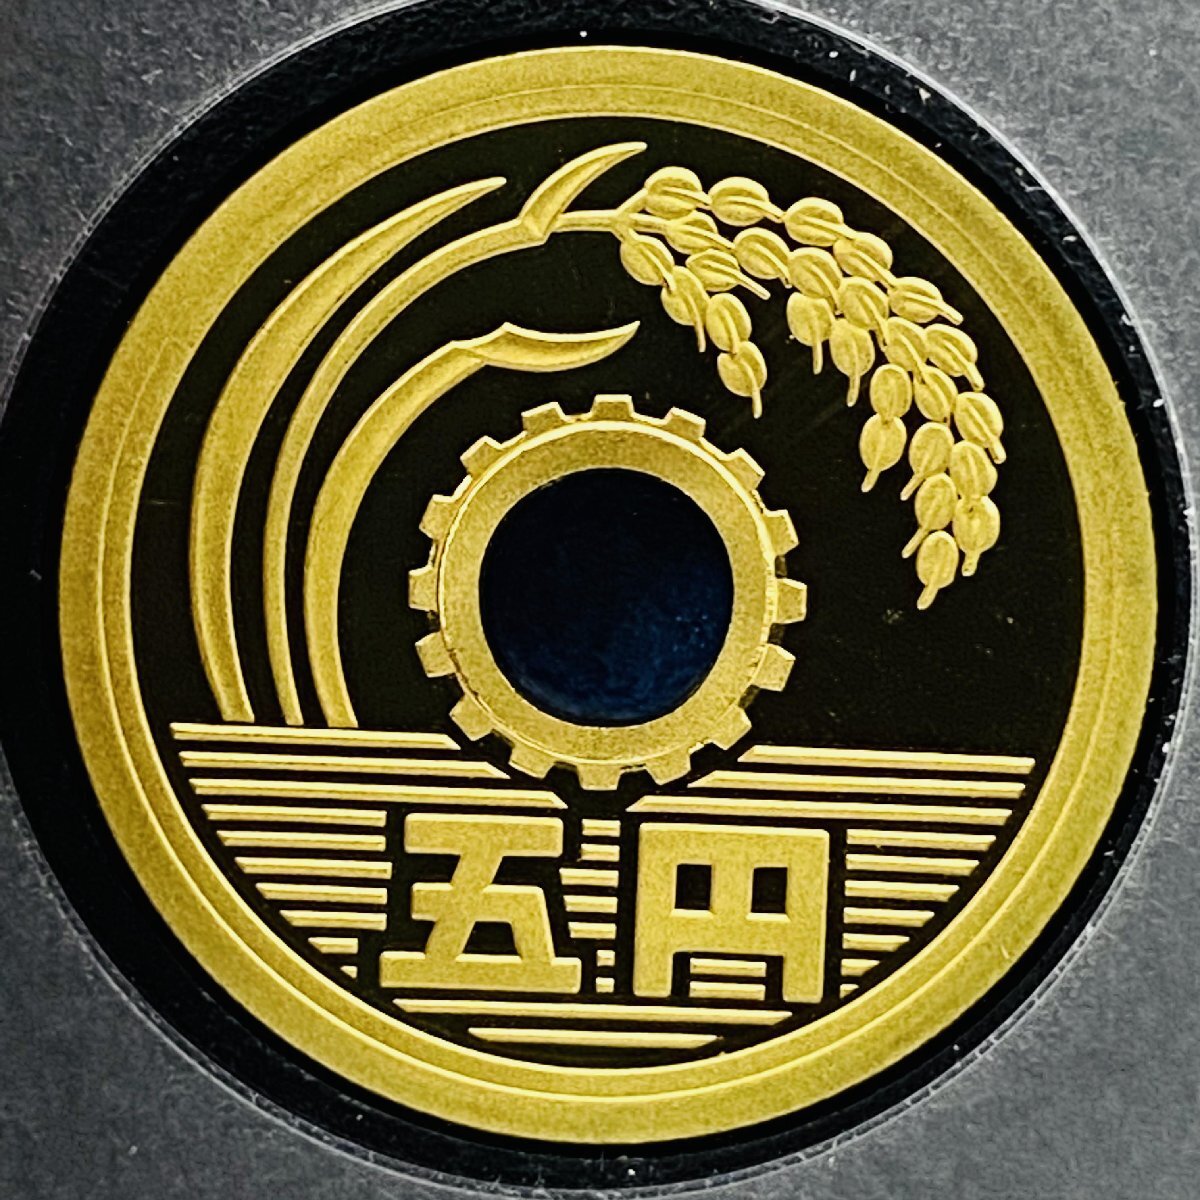 2003年 平成15年 通常プルーフ貨幣セット 額面666円 年銘板有 全揃い 記念硬貨 記念貨幣 貨幣組合 日本円 限定貨幣 コレクション P2003_画像7